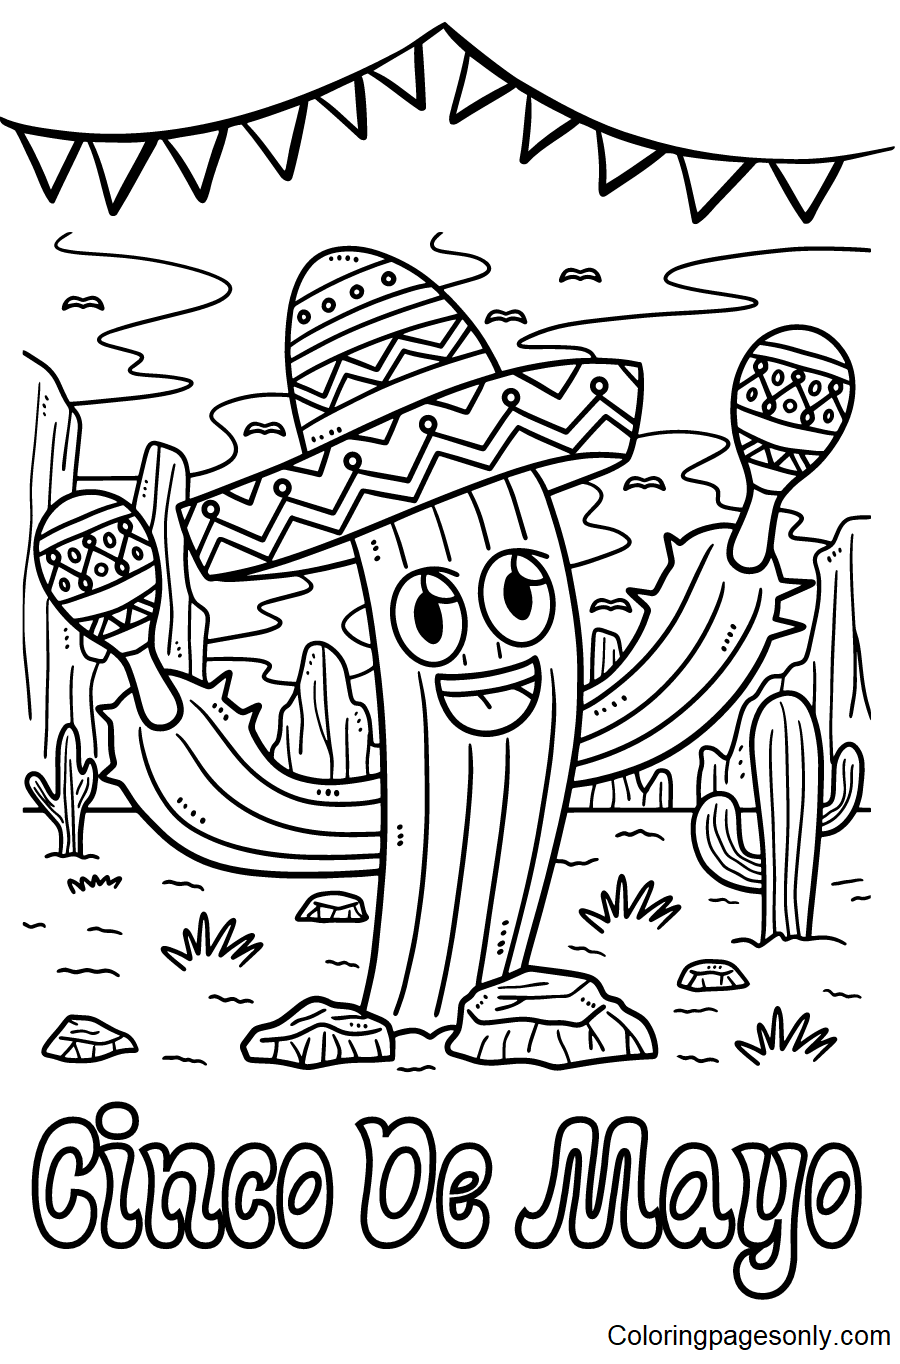 Cinco De Mayo Cactus with Sombrero Coloring Pages